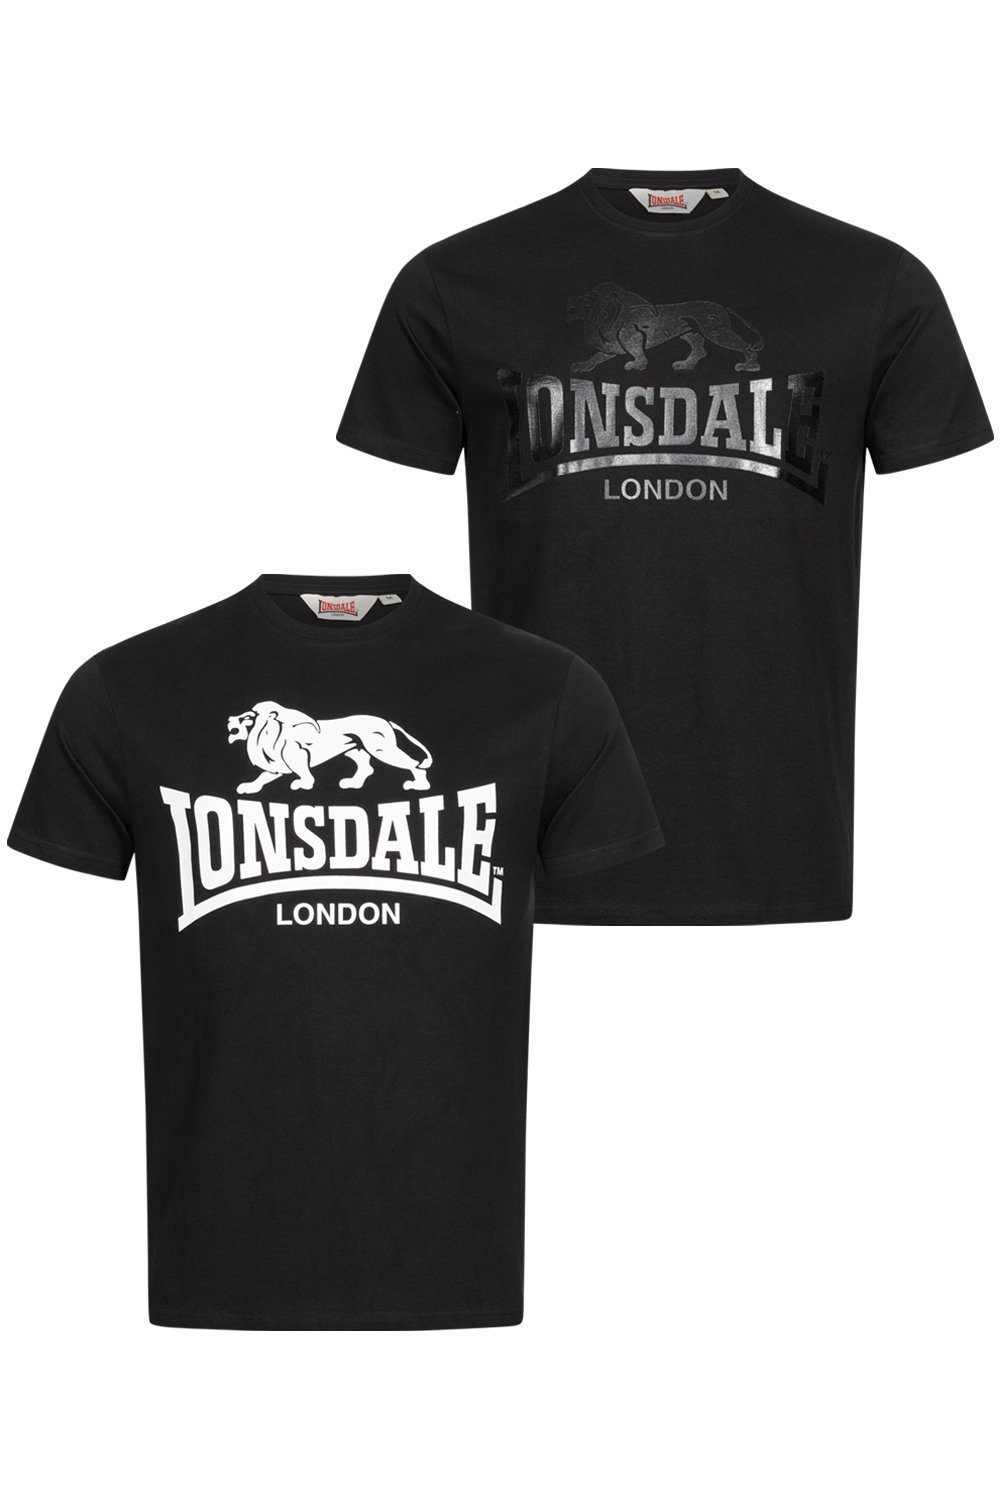 Lonsdale T-Shirt KELSO Black/Black